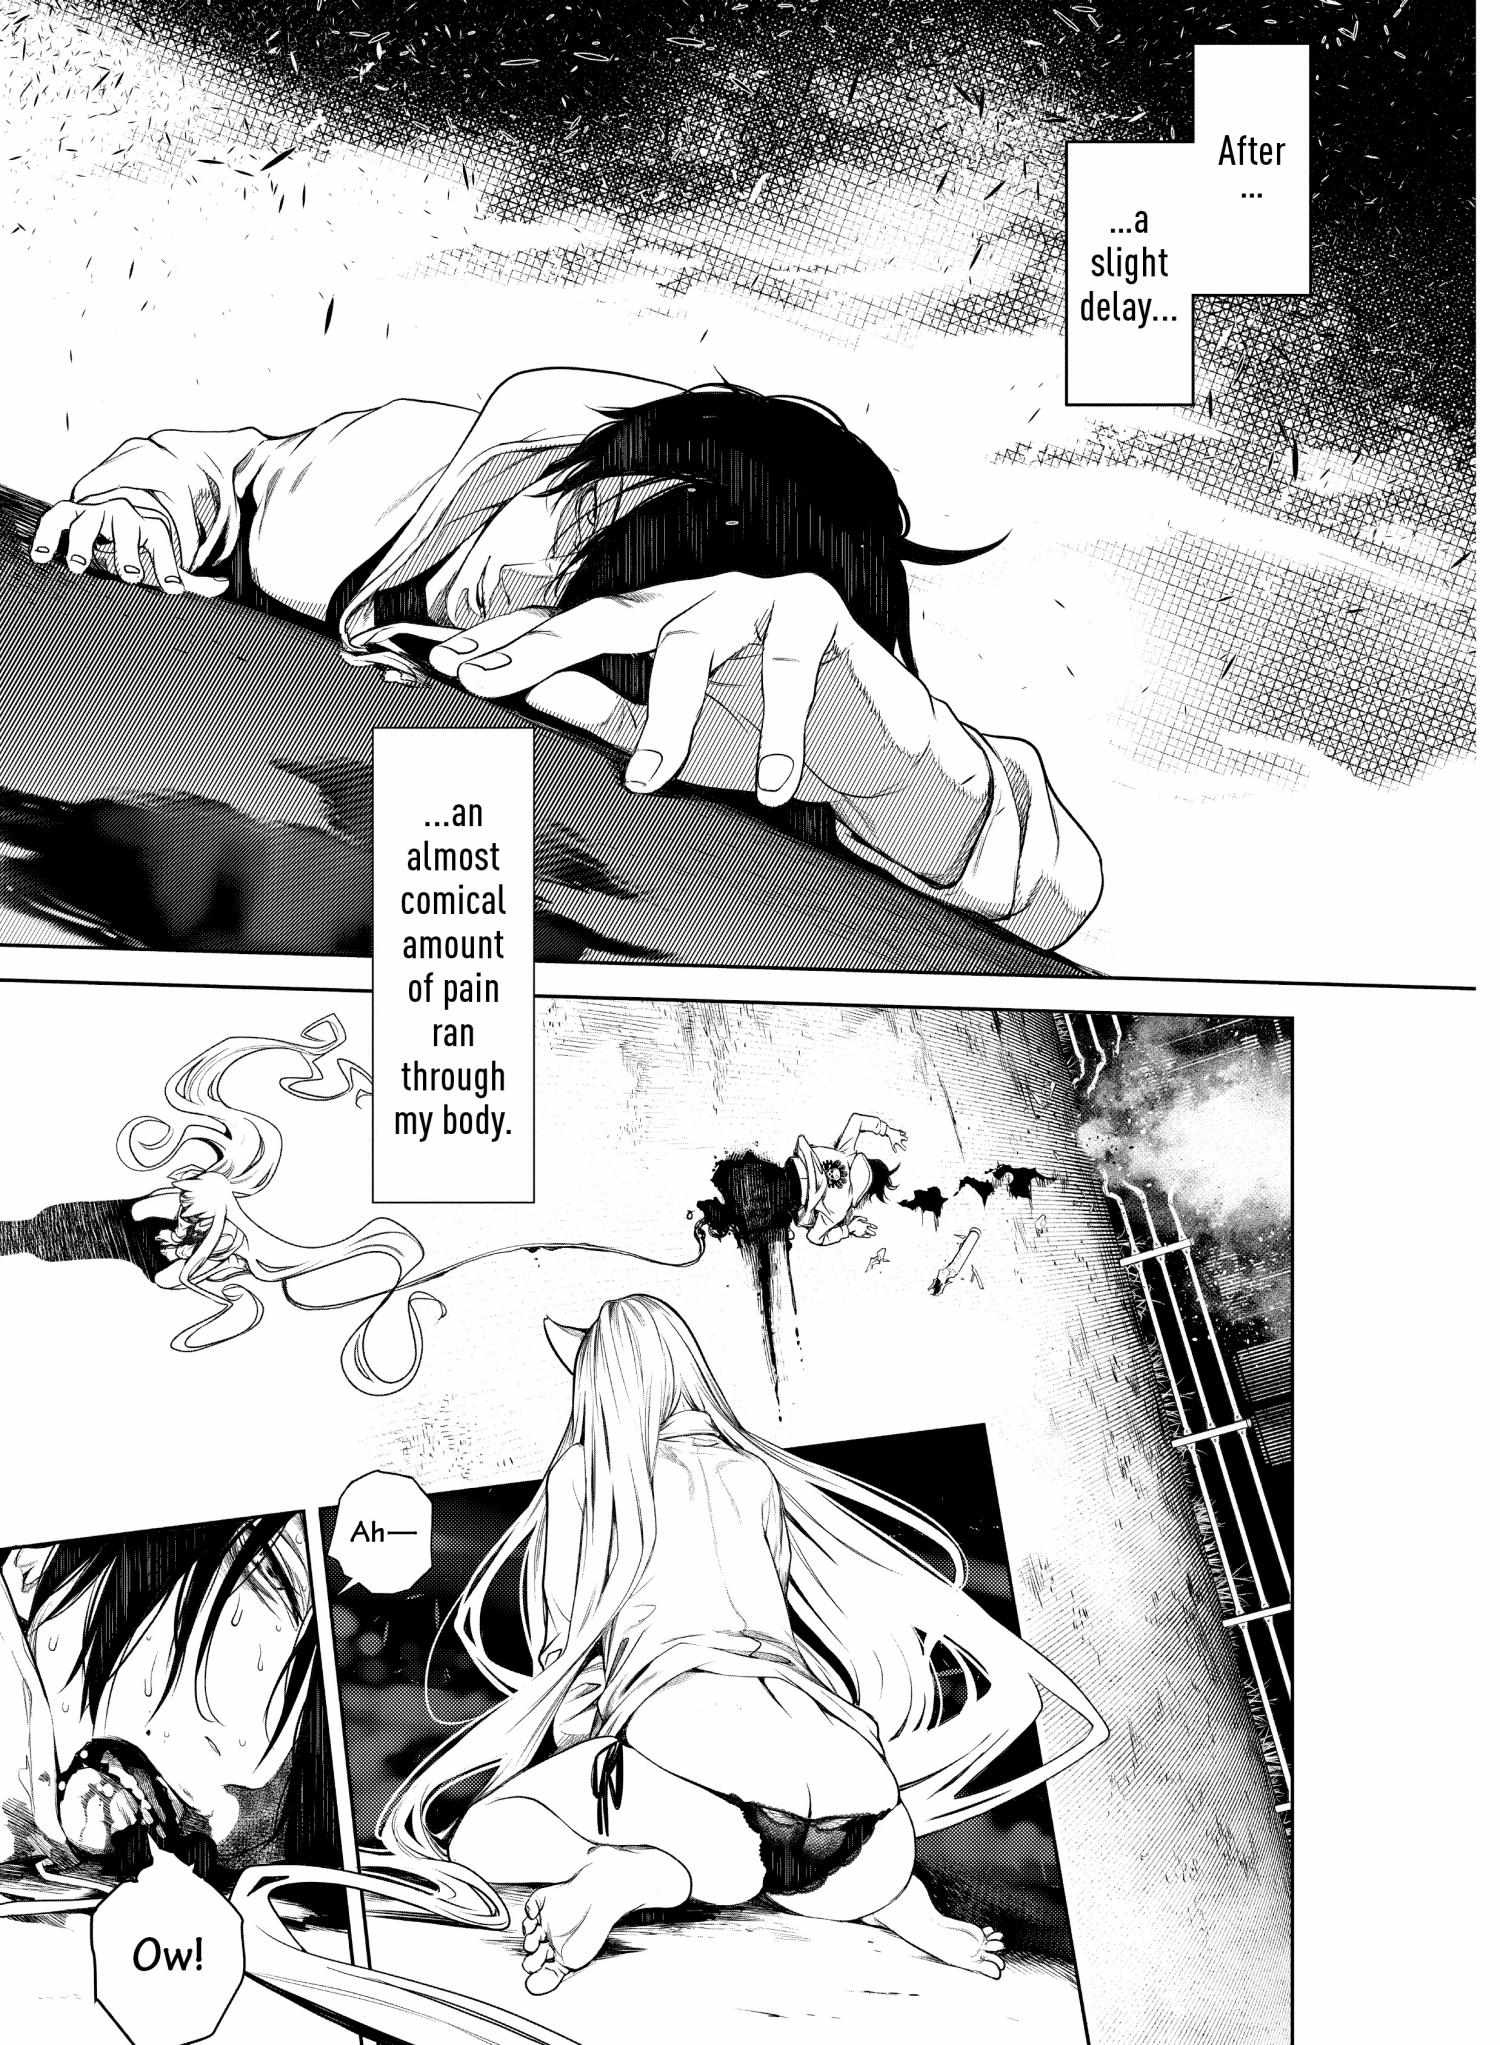 Bakemonogatari (Nishio Ishin) - Page 2